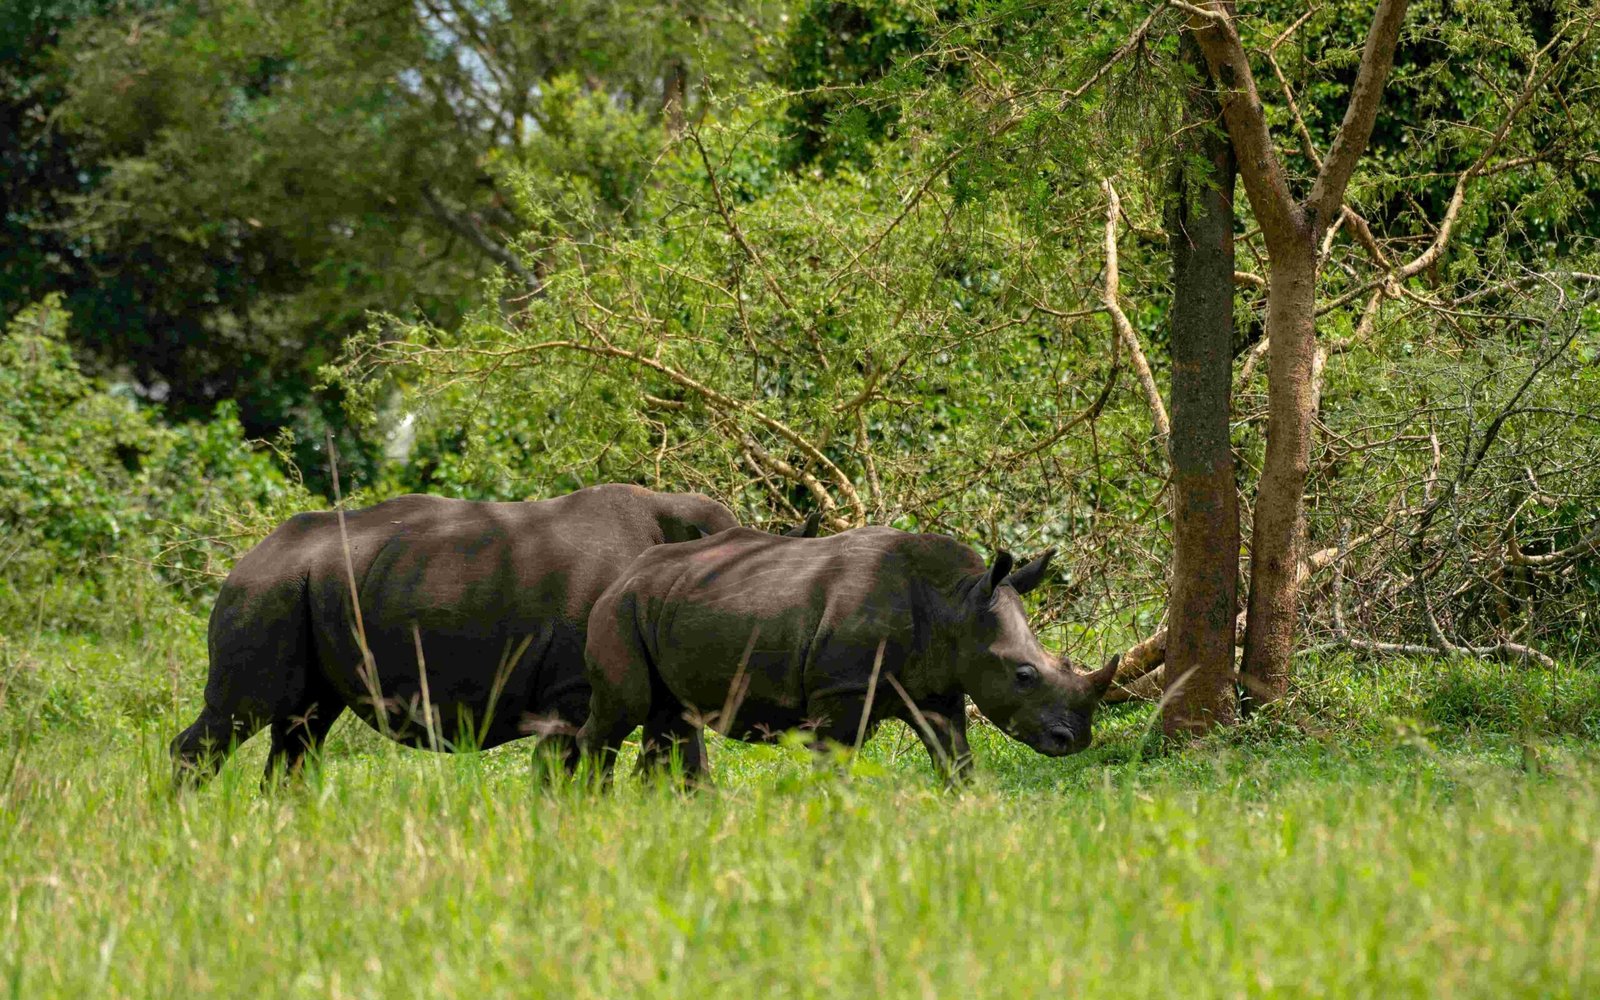 17 Day Ultimate Uganda Wildlife & Primates Safari